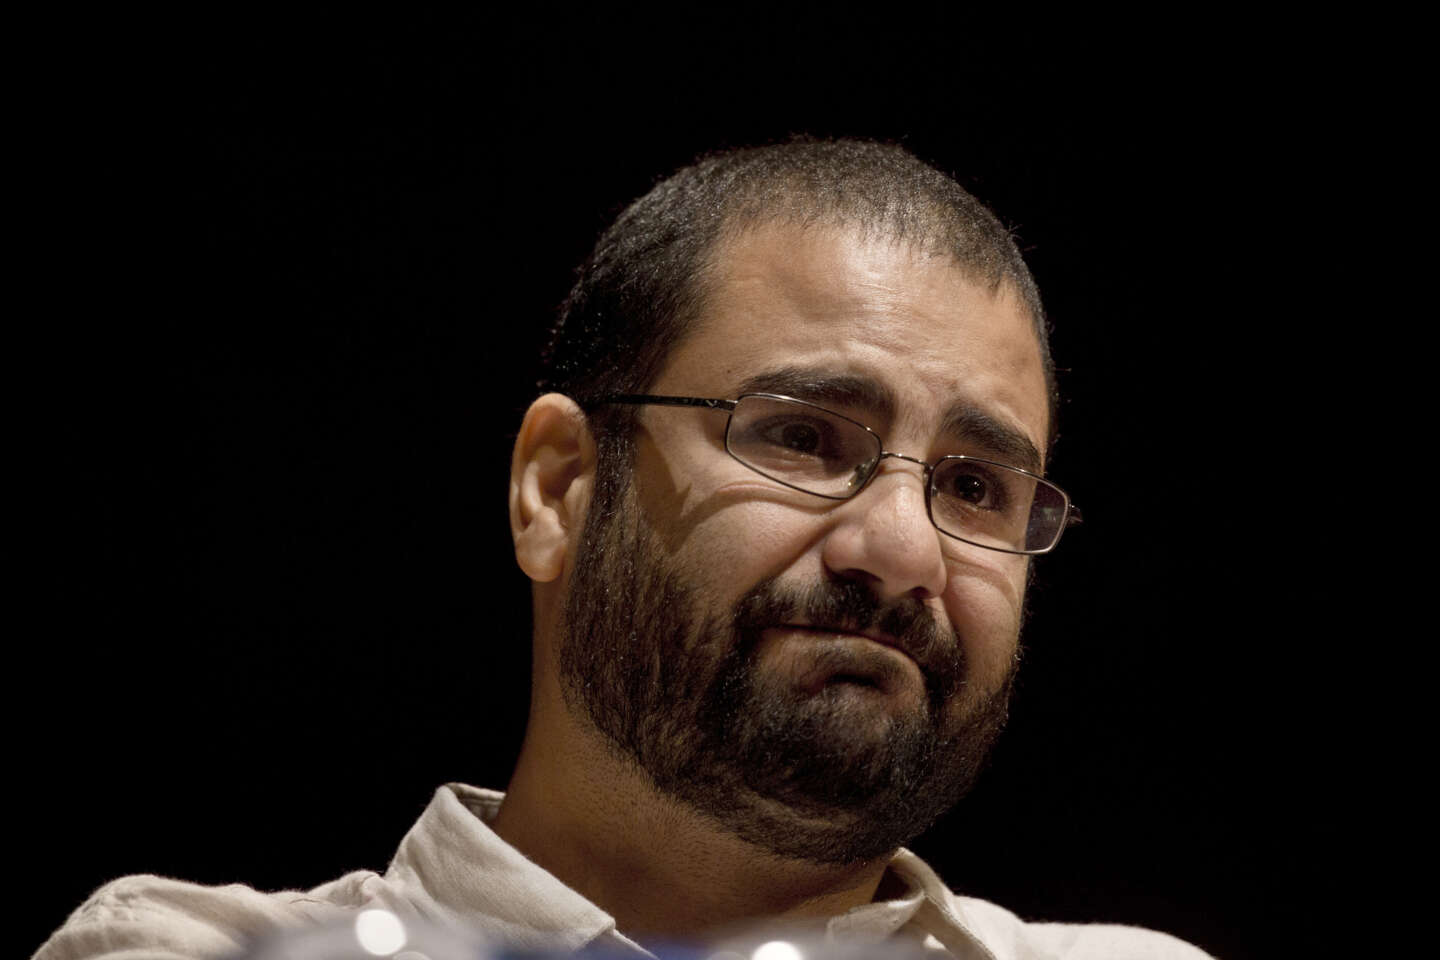 COP27 : Le Caire sous pression pour libérer le militant Alaa Abdel Fattah, « en grand danger » après des mois de grève de la faim